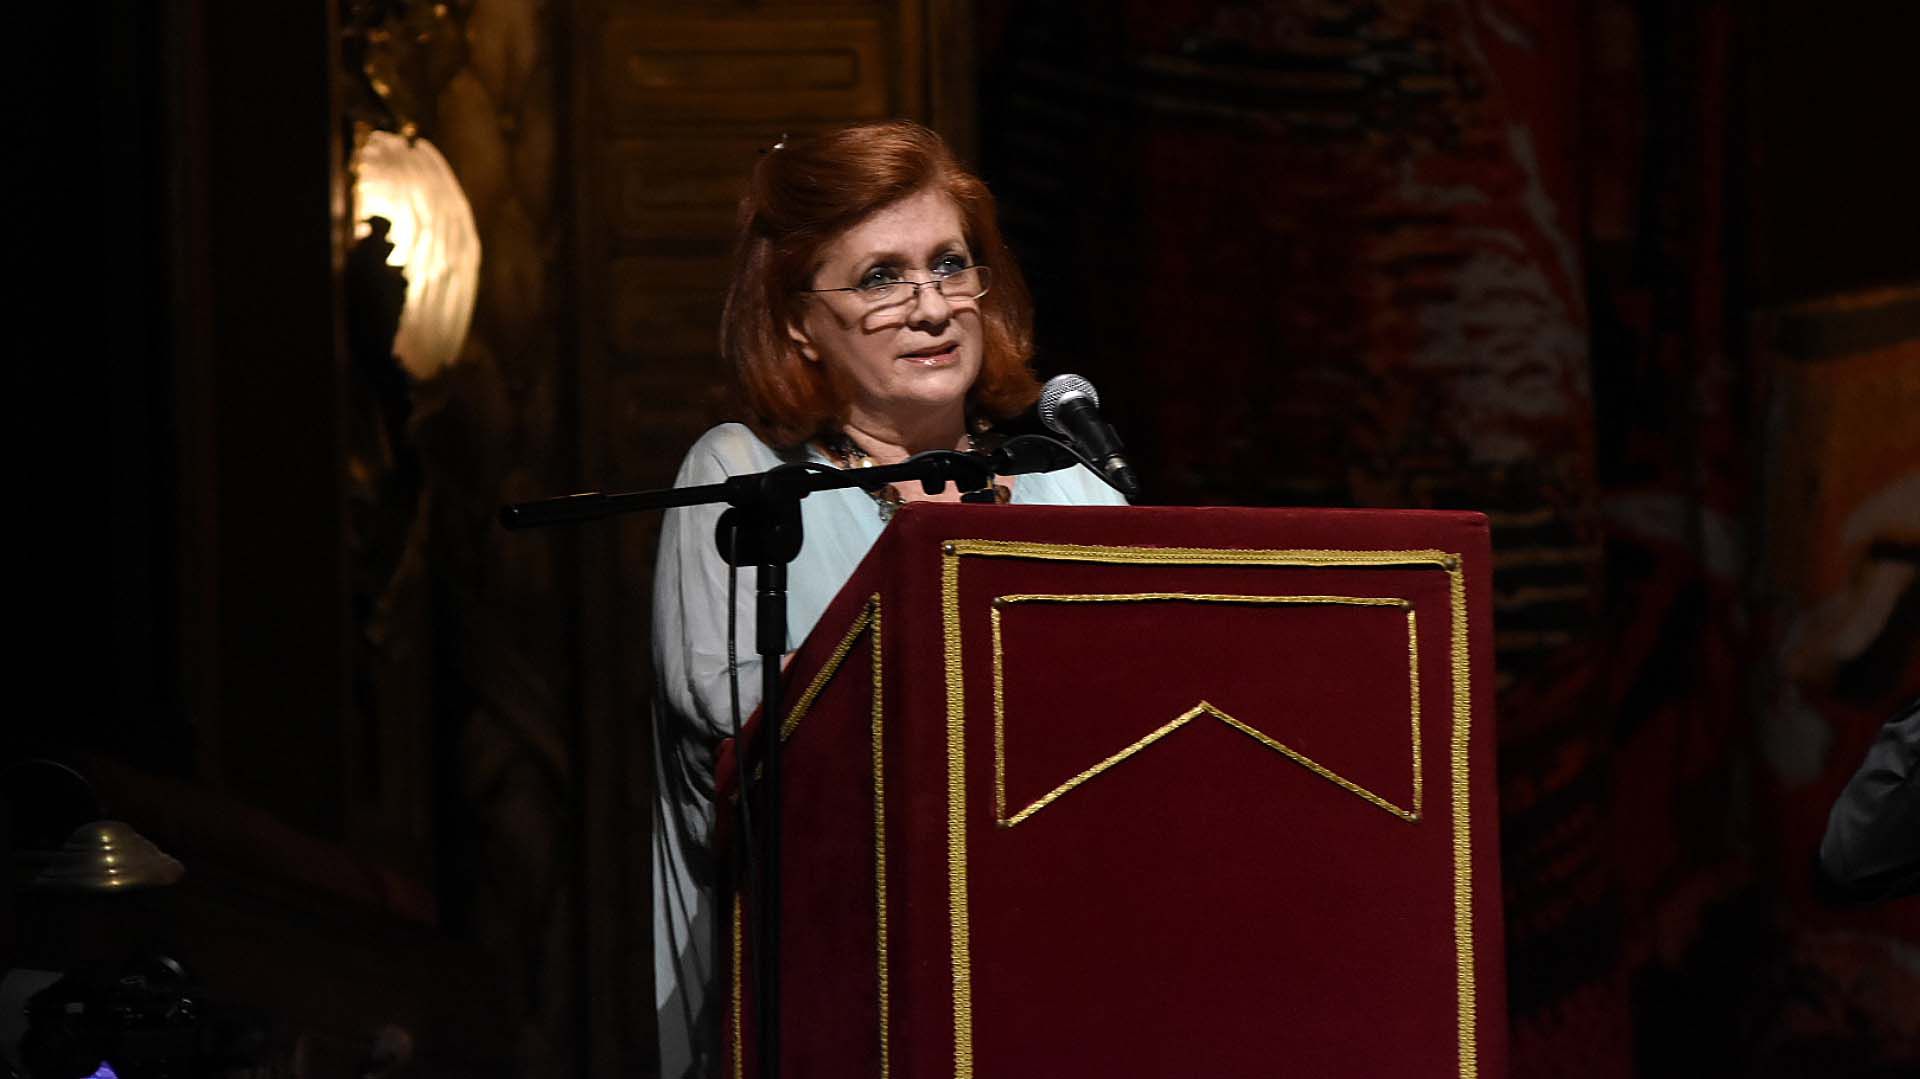 La presidente de ALPI, Teresa González Fernández, durante su discurso en el Teatro Colón para celebrar el 76° aniversario de esa Asociación Civil en una nueva gala solidaria